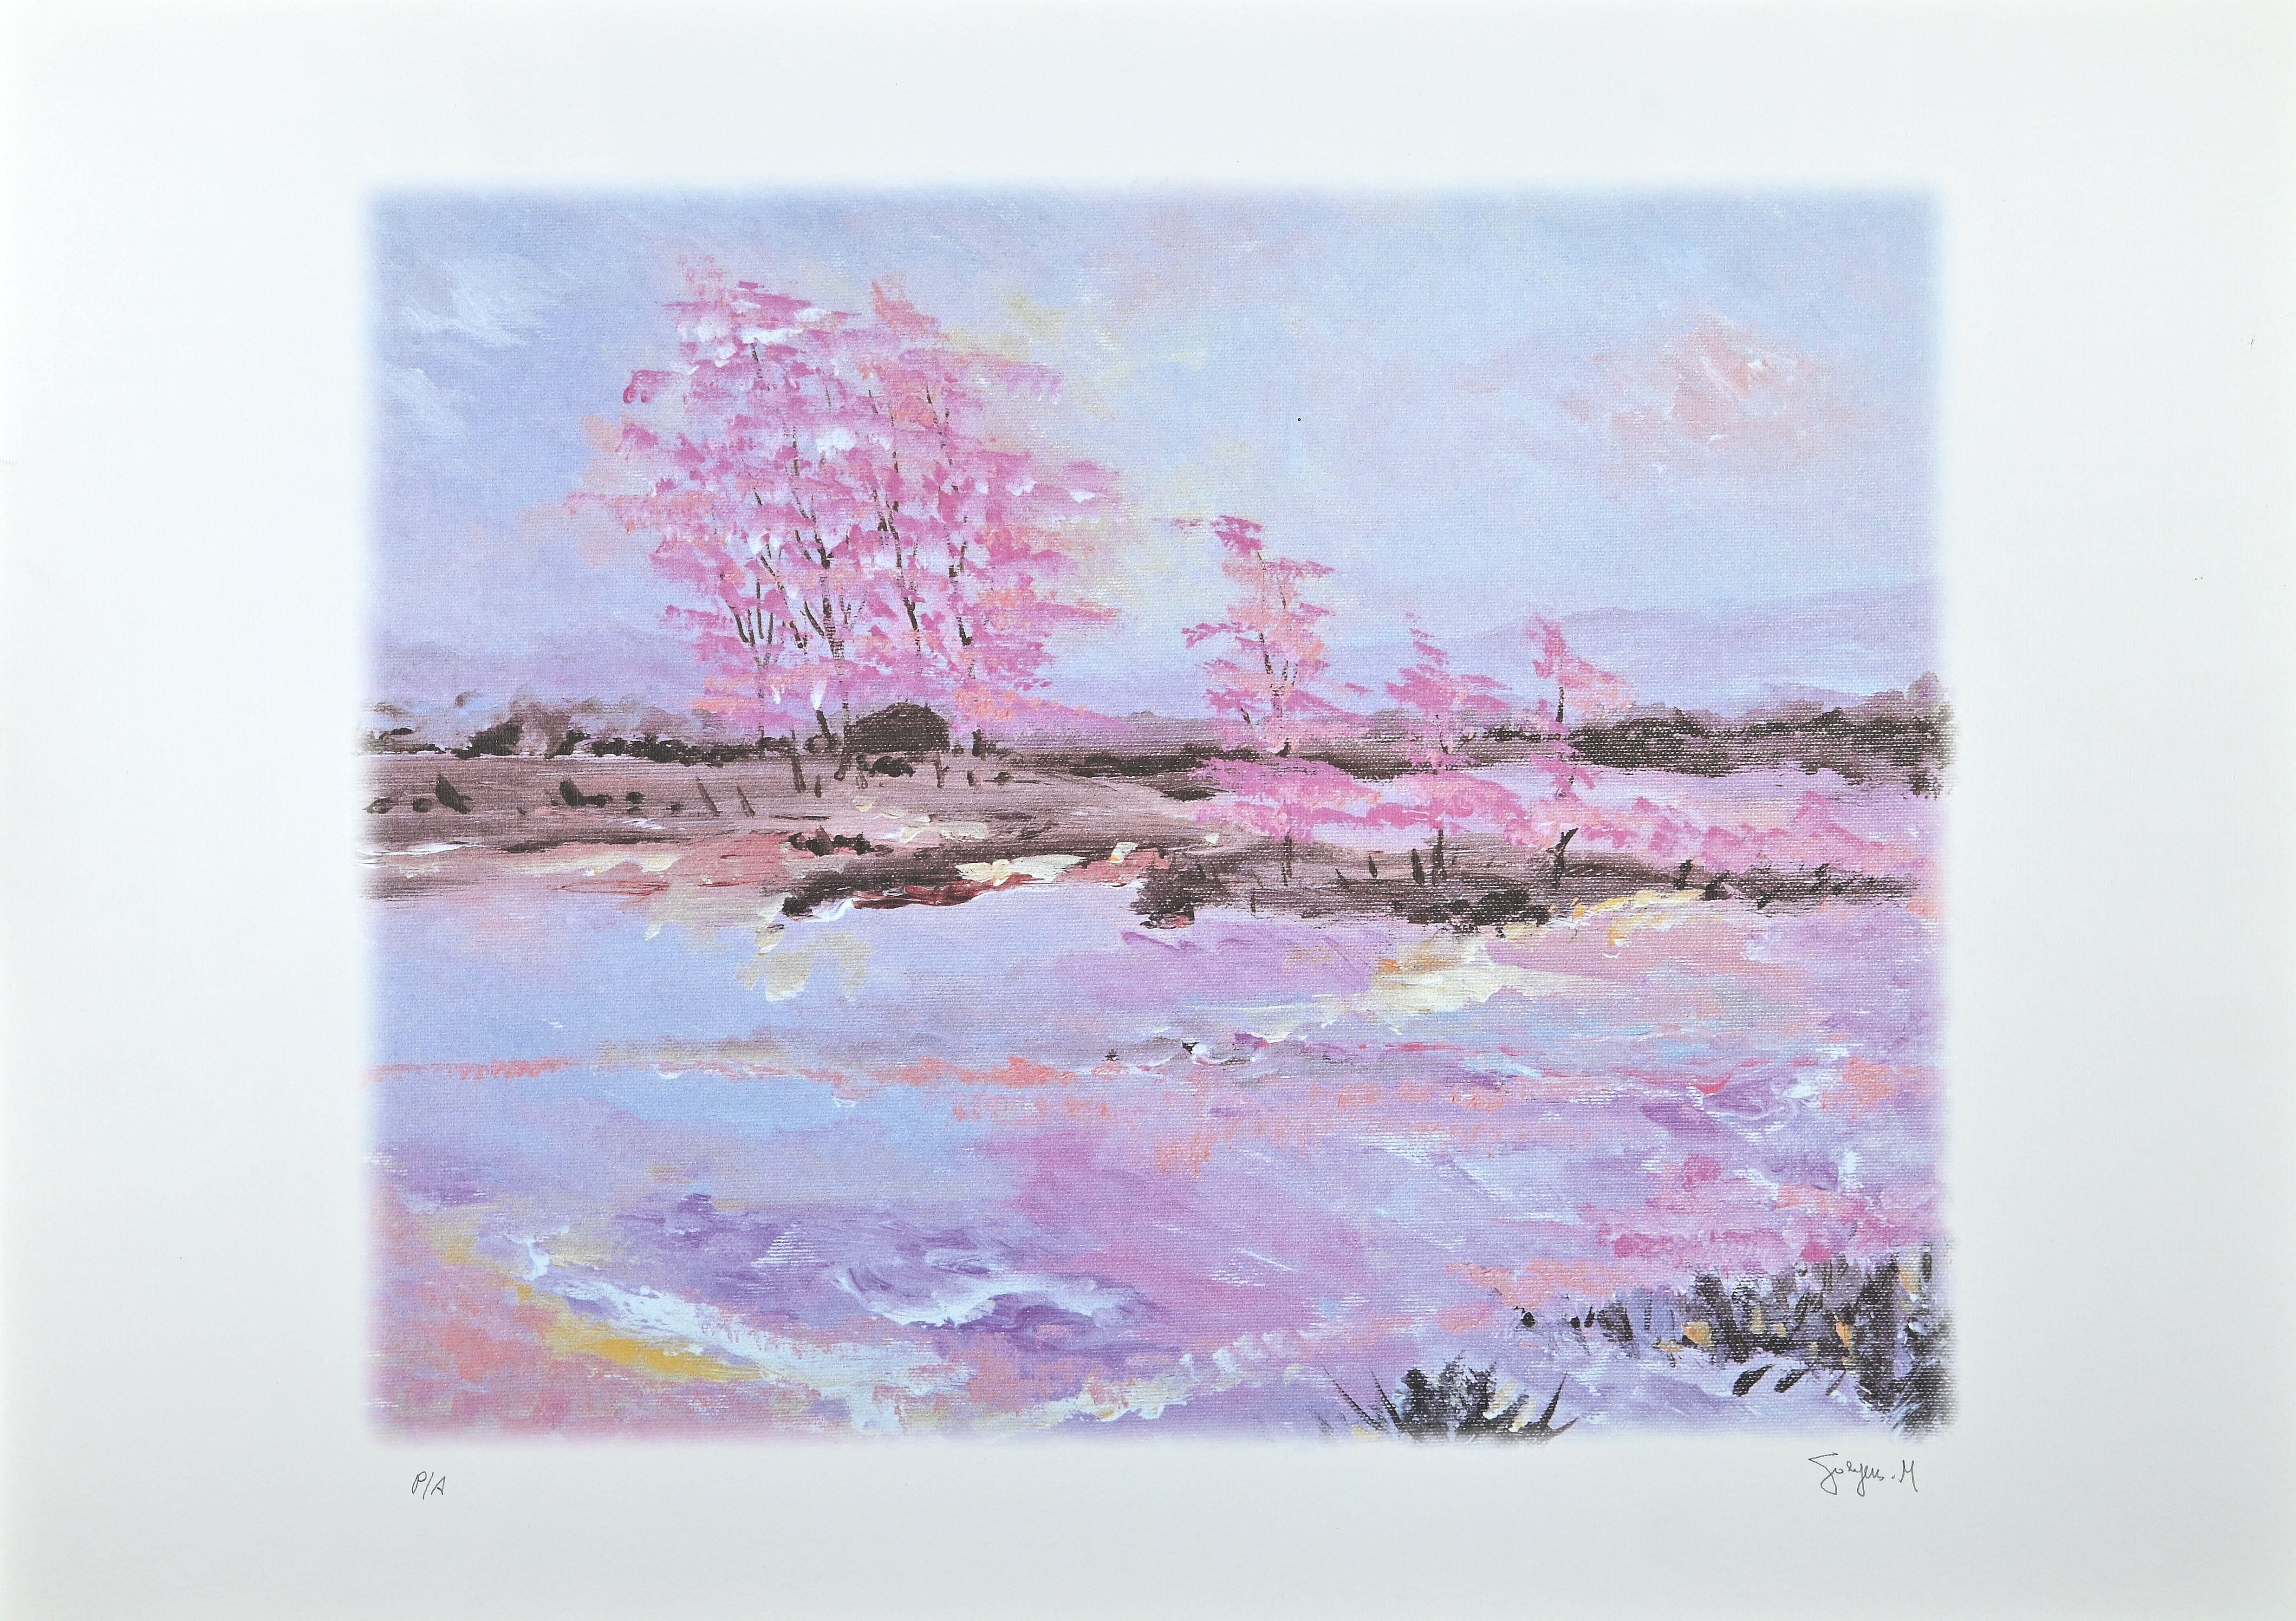 Pink blossoms est une lithographie originale en couleurs réalisée par l'artiste belge  Martine Goeyens.

Au dos, le Label du certificat d'authenticité de la "Fondazione Di Paolo".

Signé à la main en bas à droite au crayon.

Preuve de